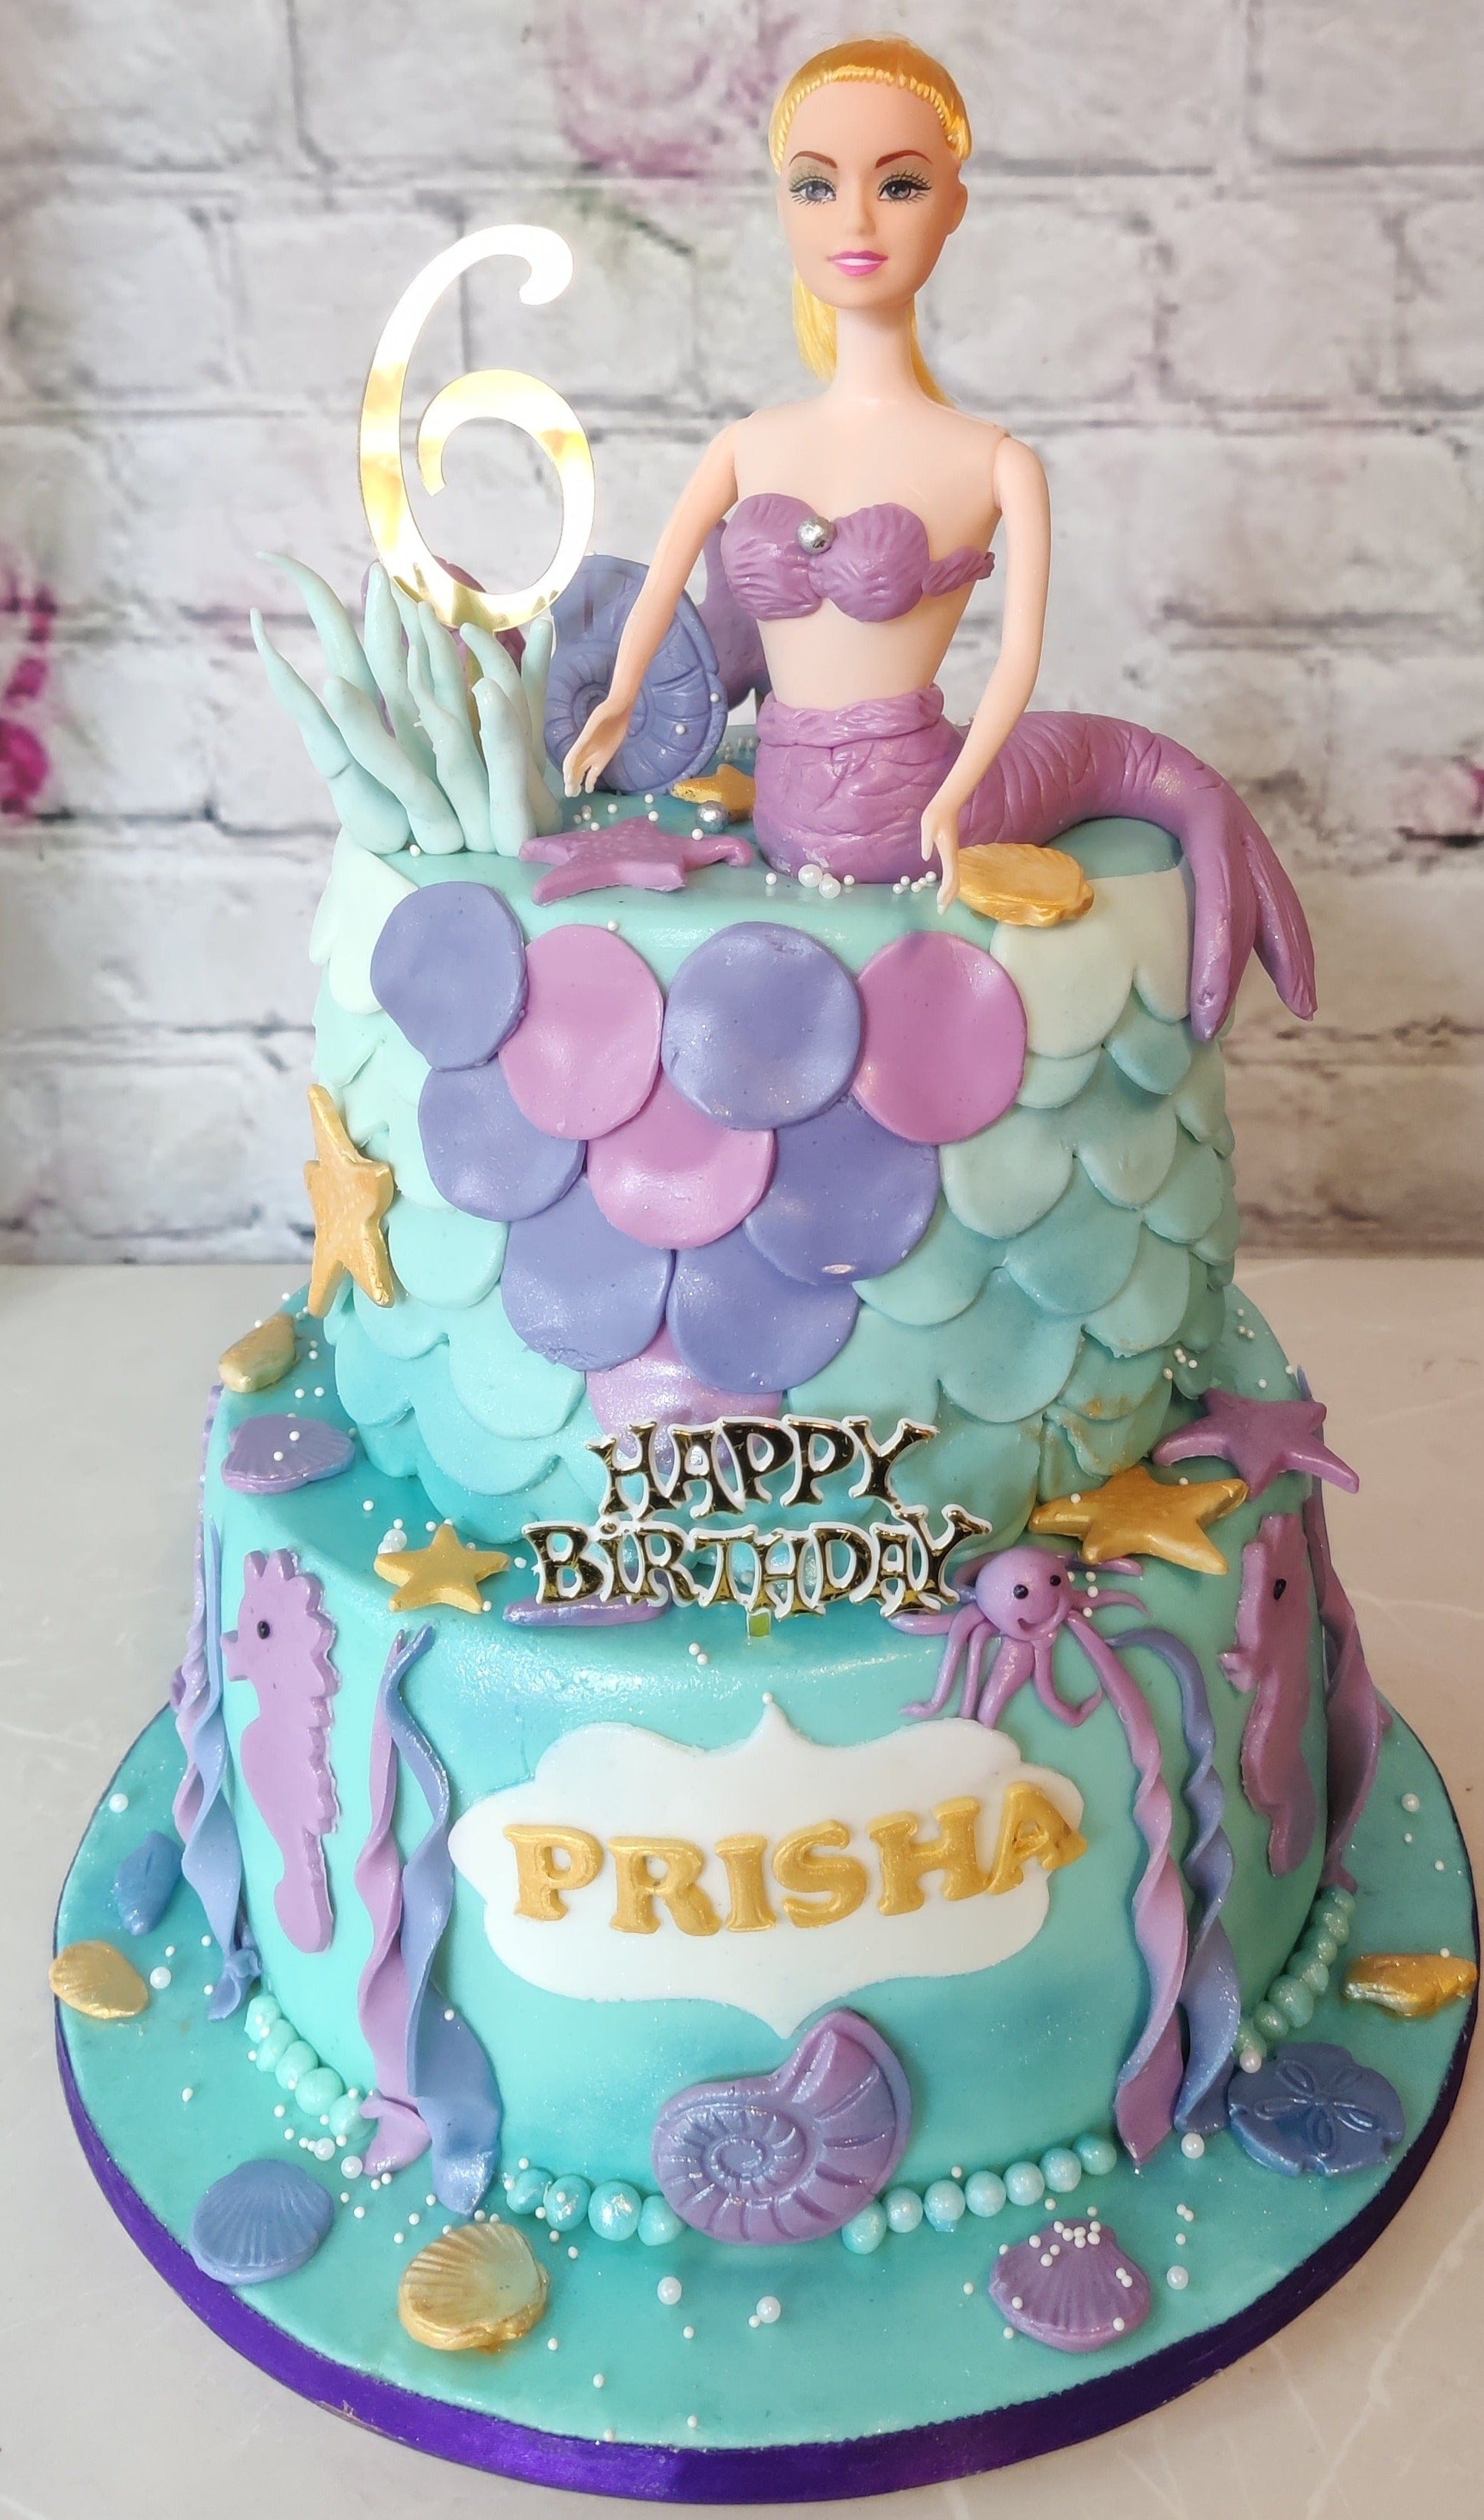 Princess Birthday Cake - Palermo 365 Shop